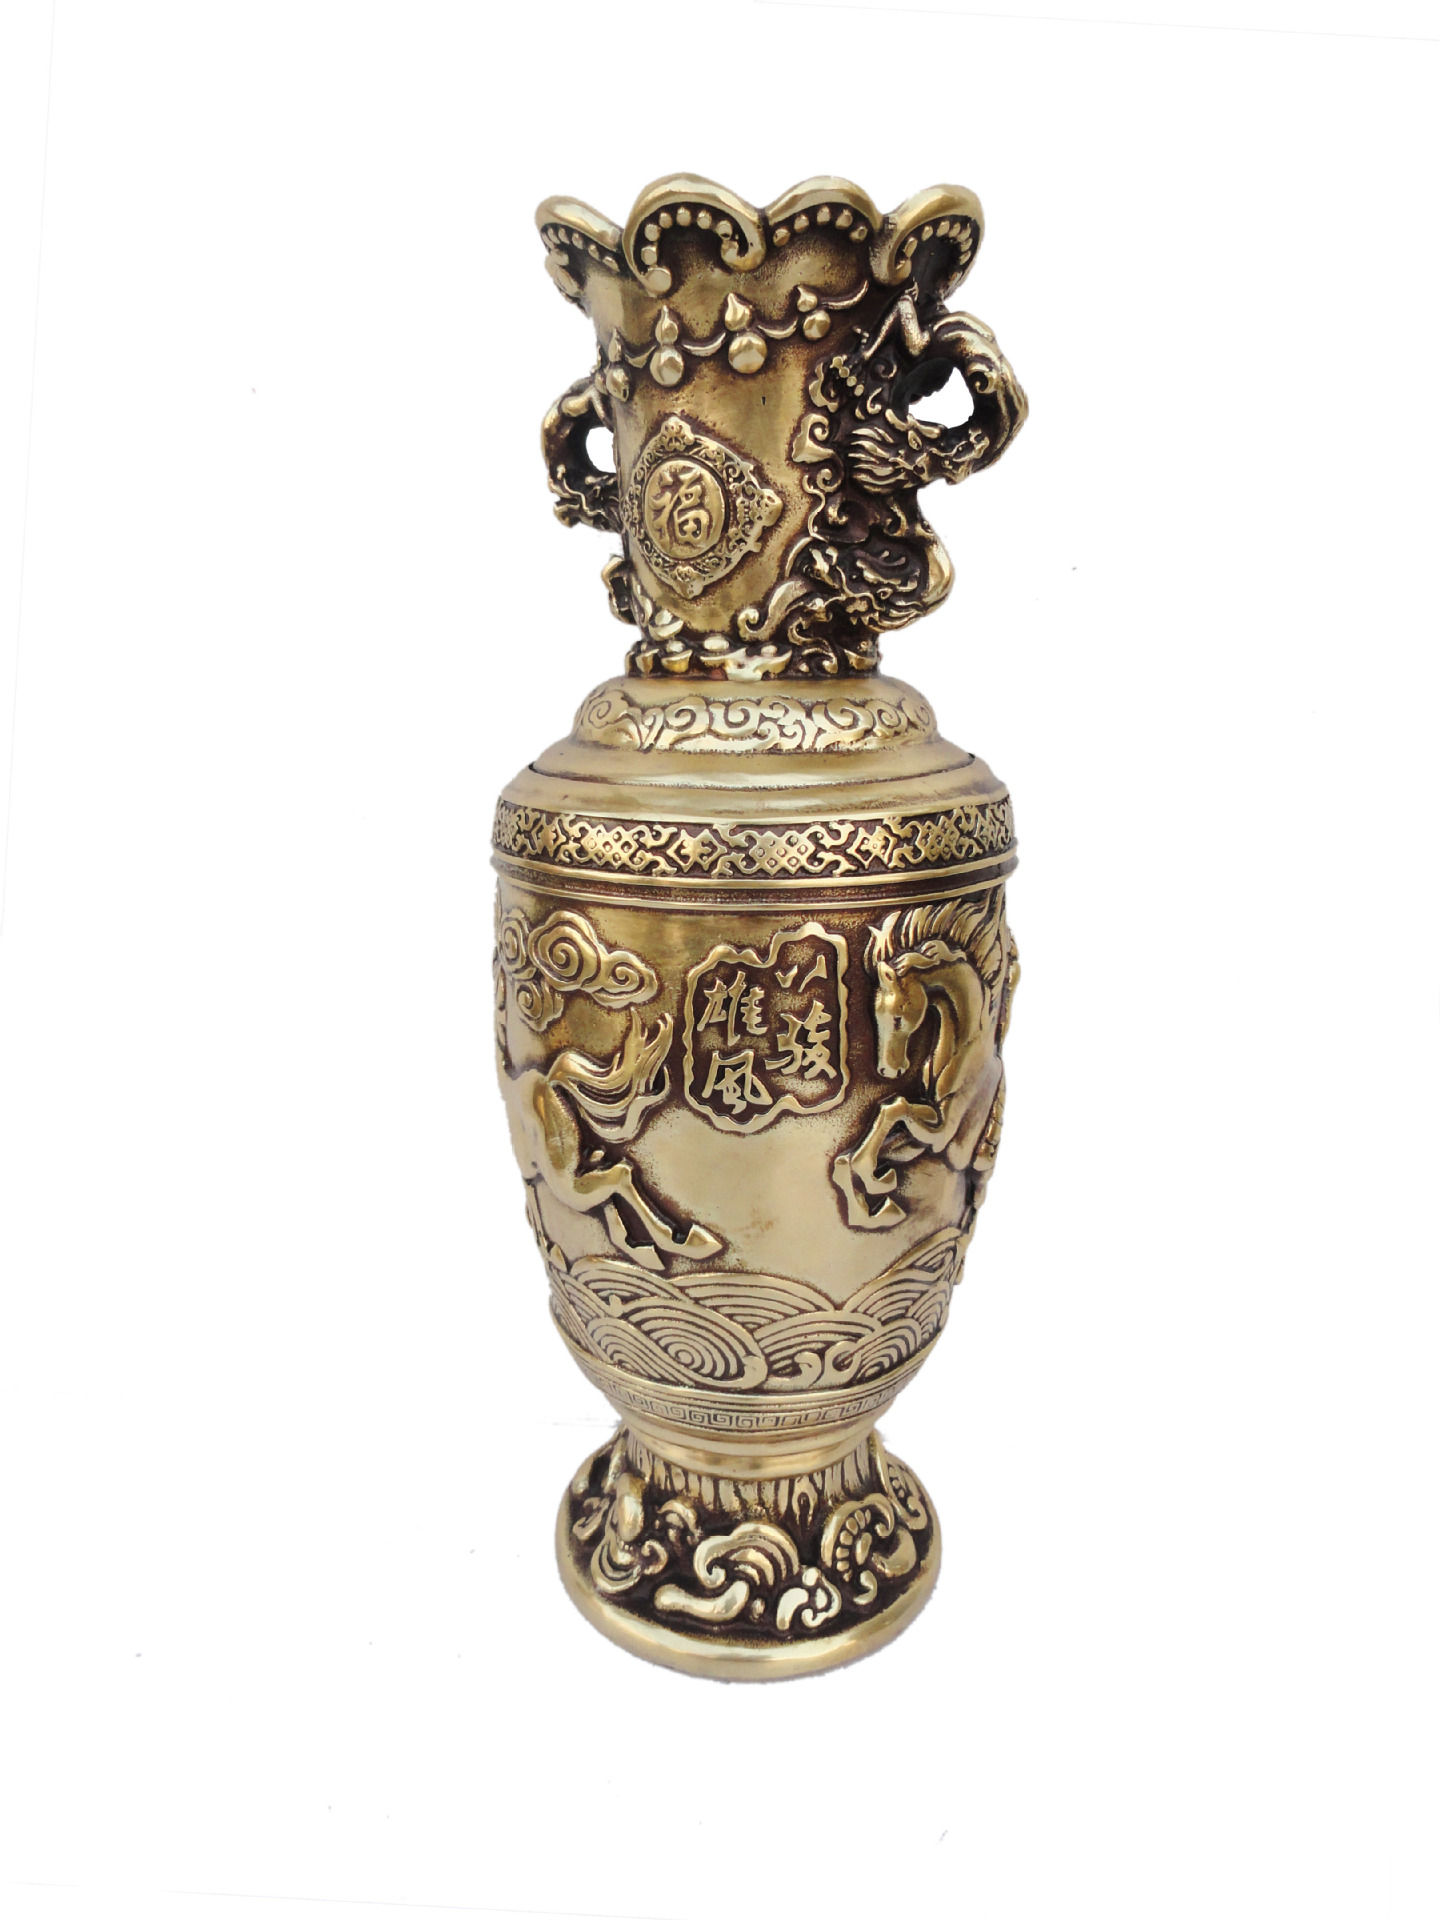 纯铜花瓶摆件 八骏图花瓶,助仕途